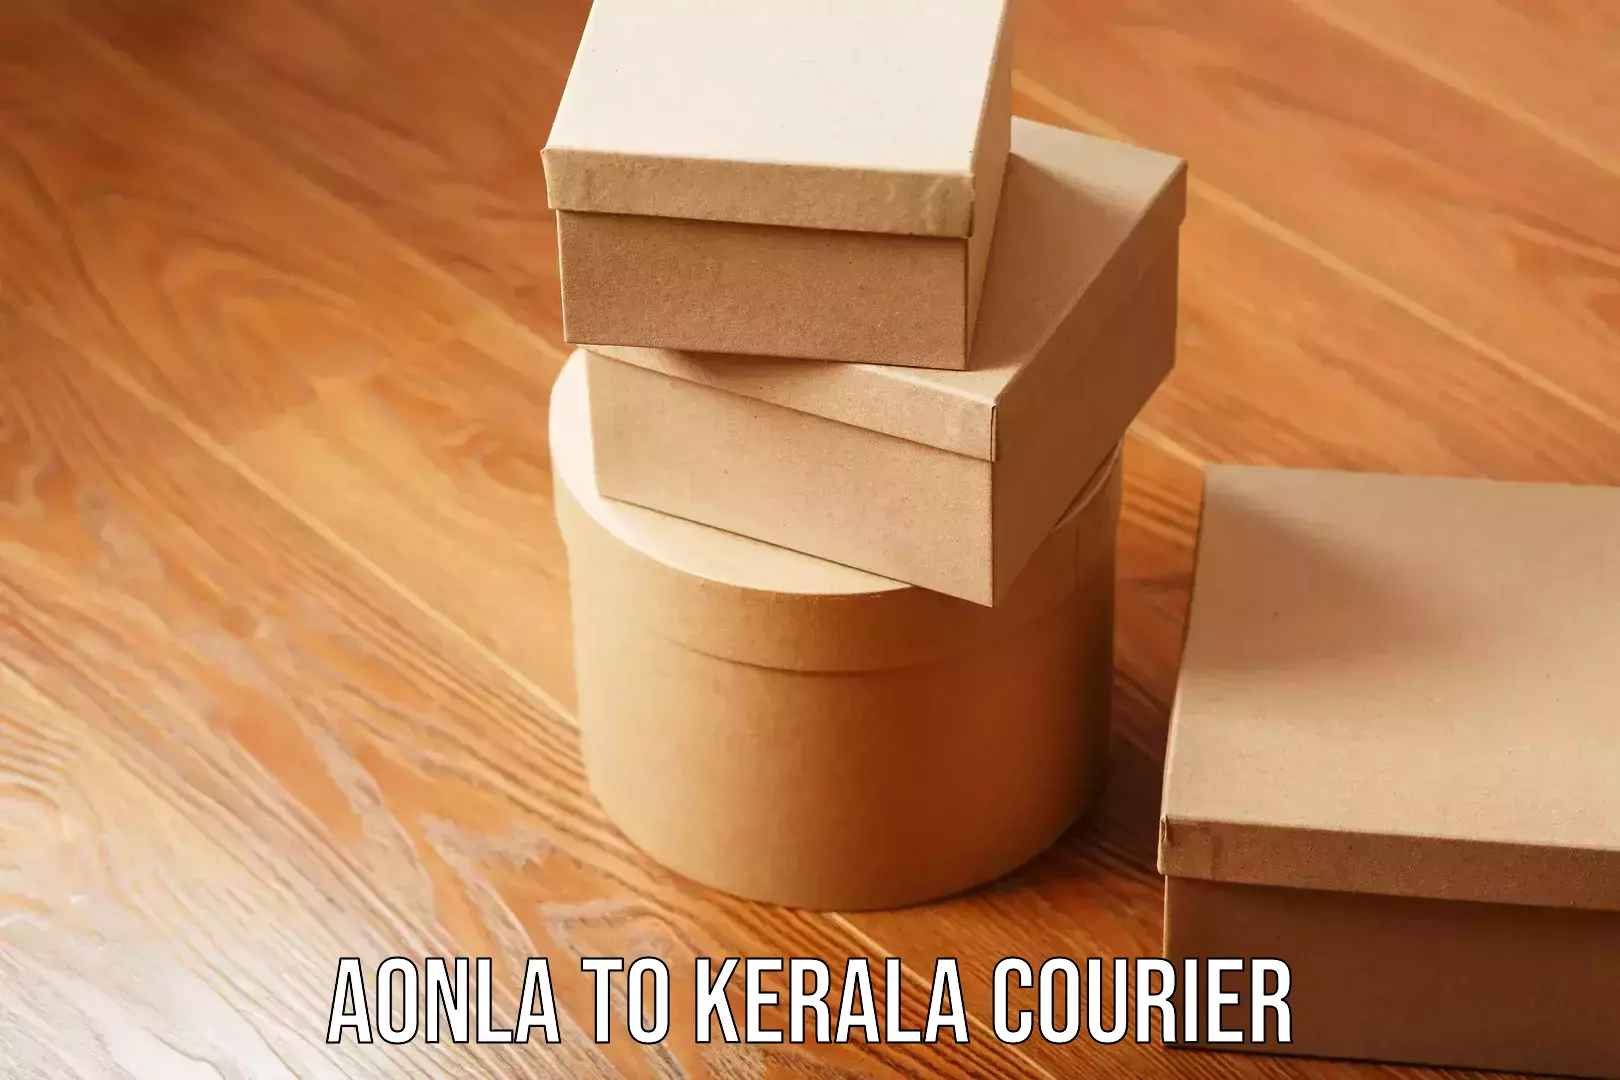 Custom courier packaging Aonla to Kerala